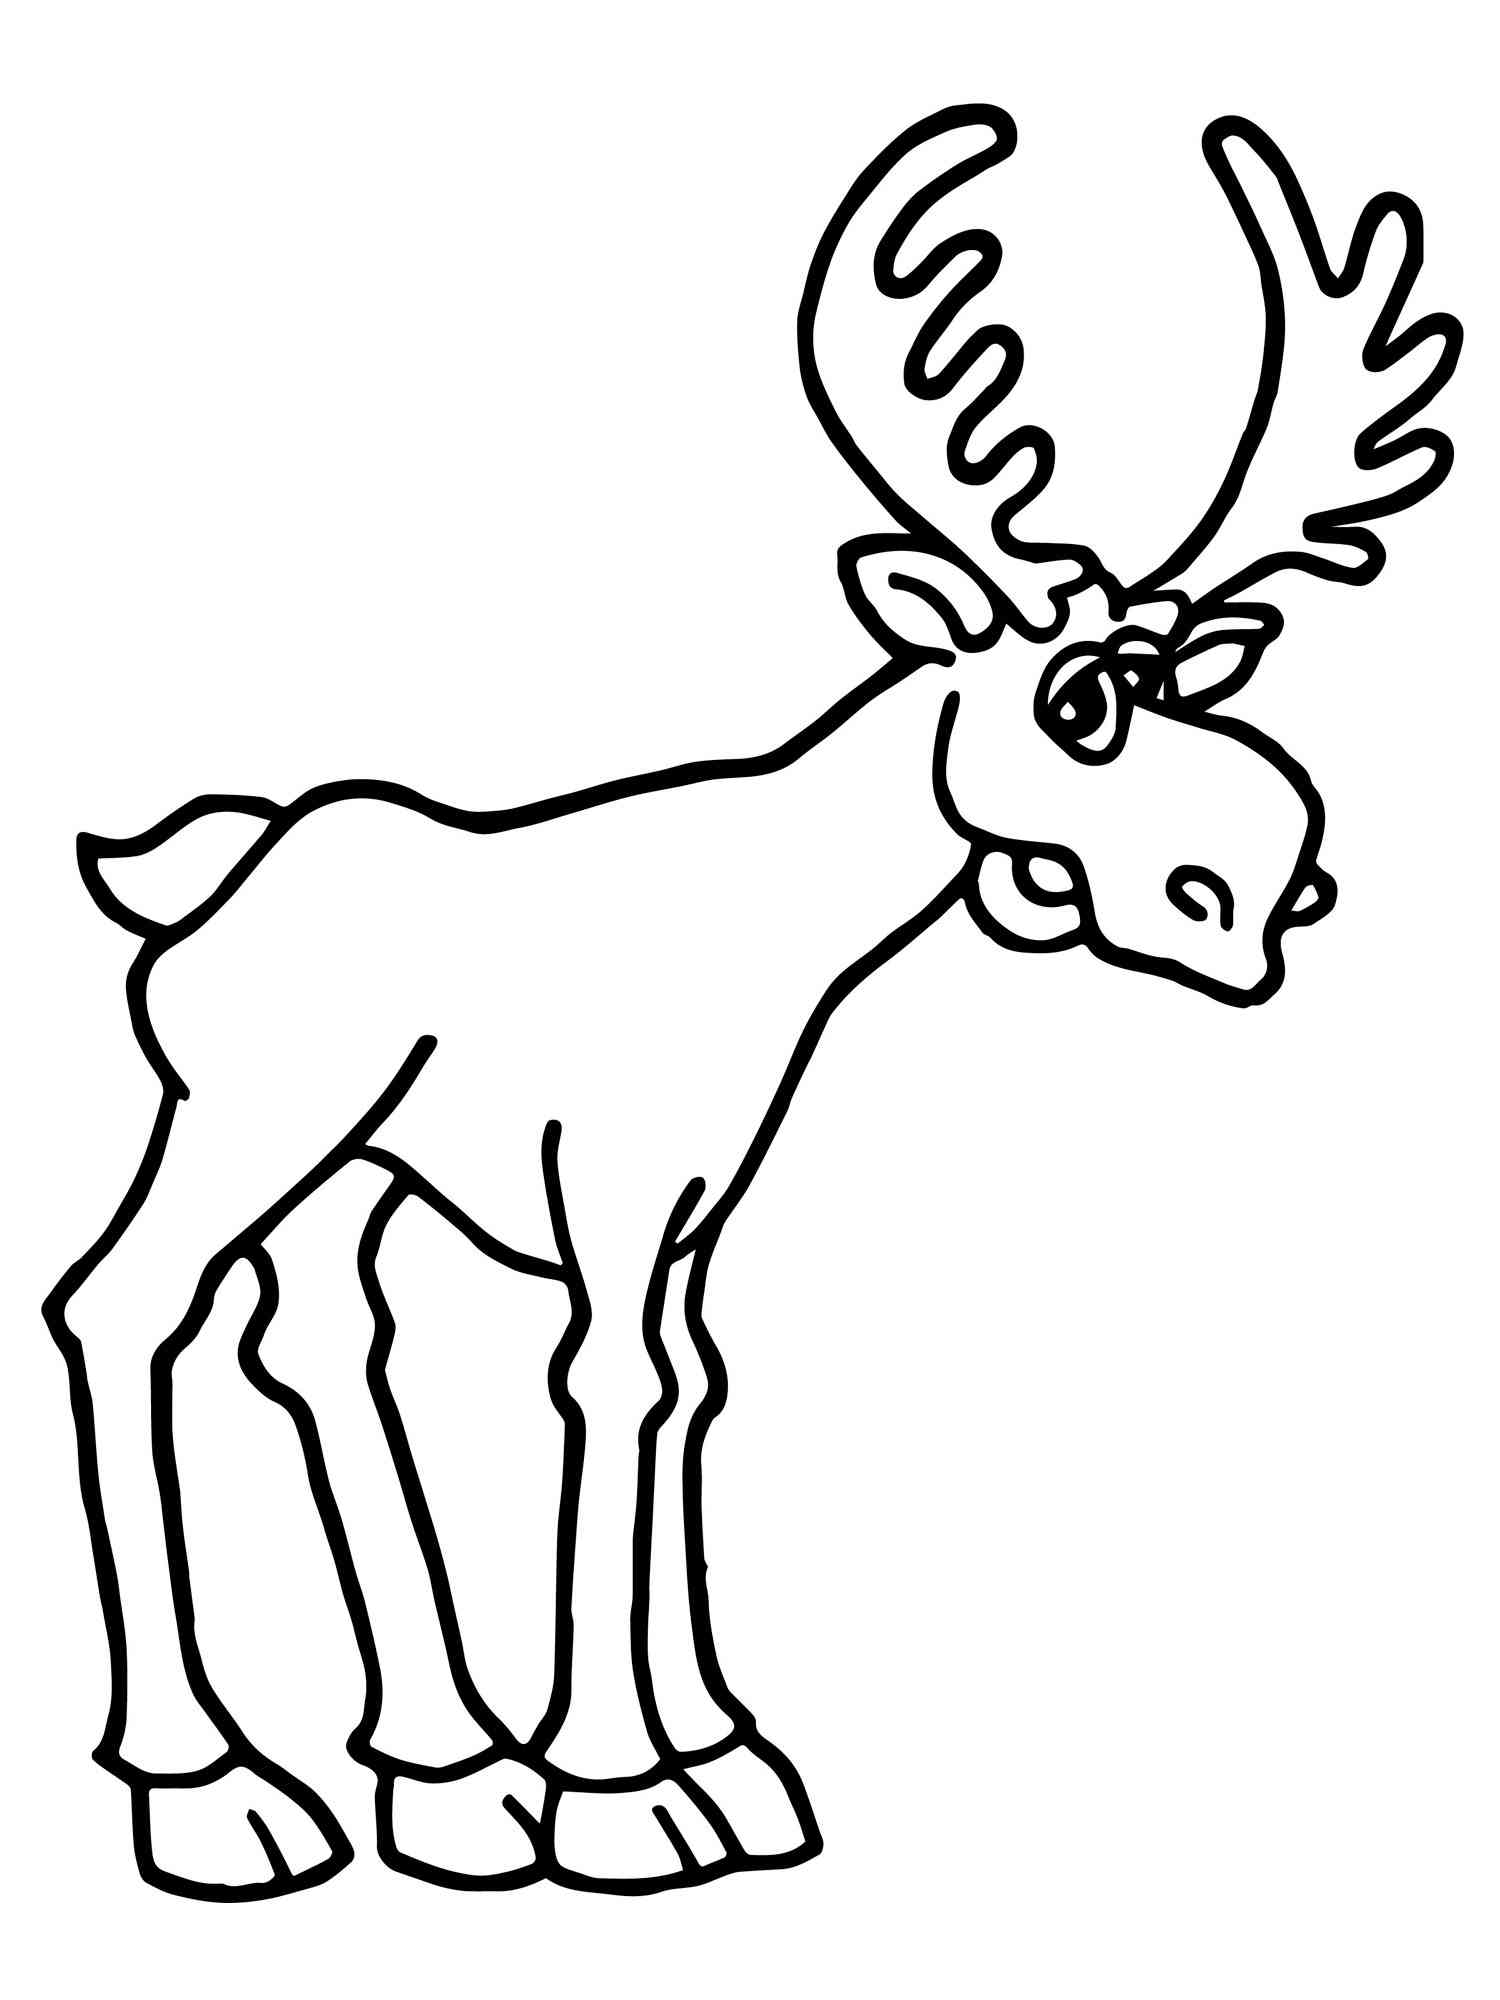 Cartoon Moose coloring page